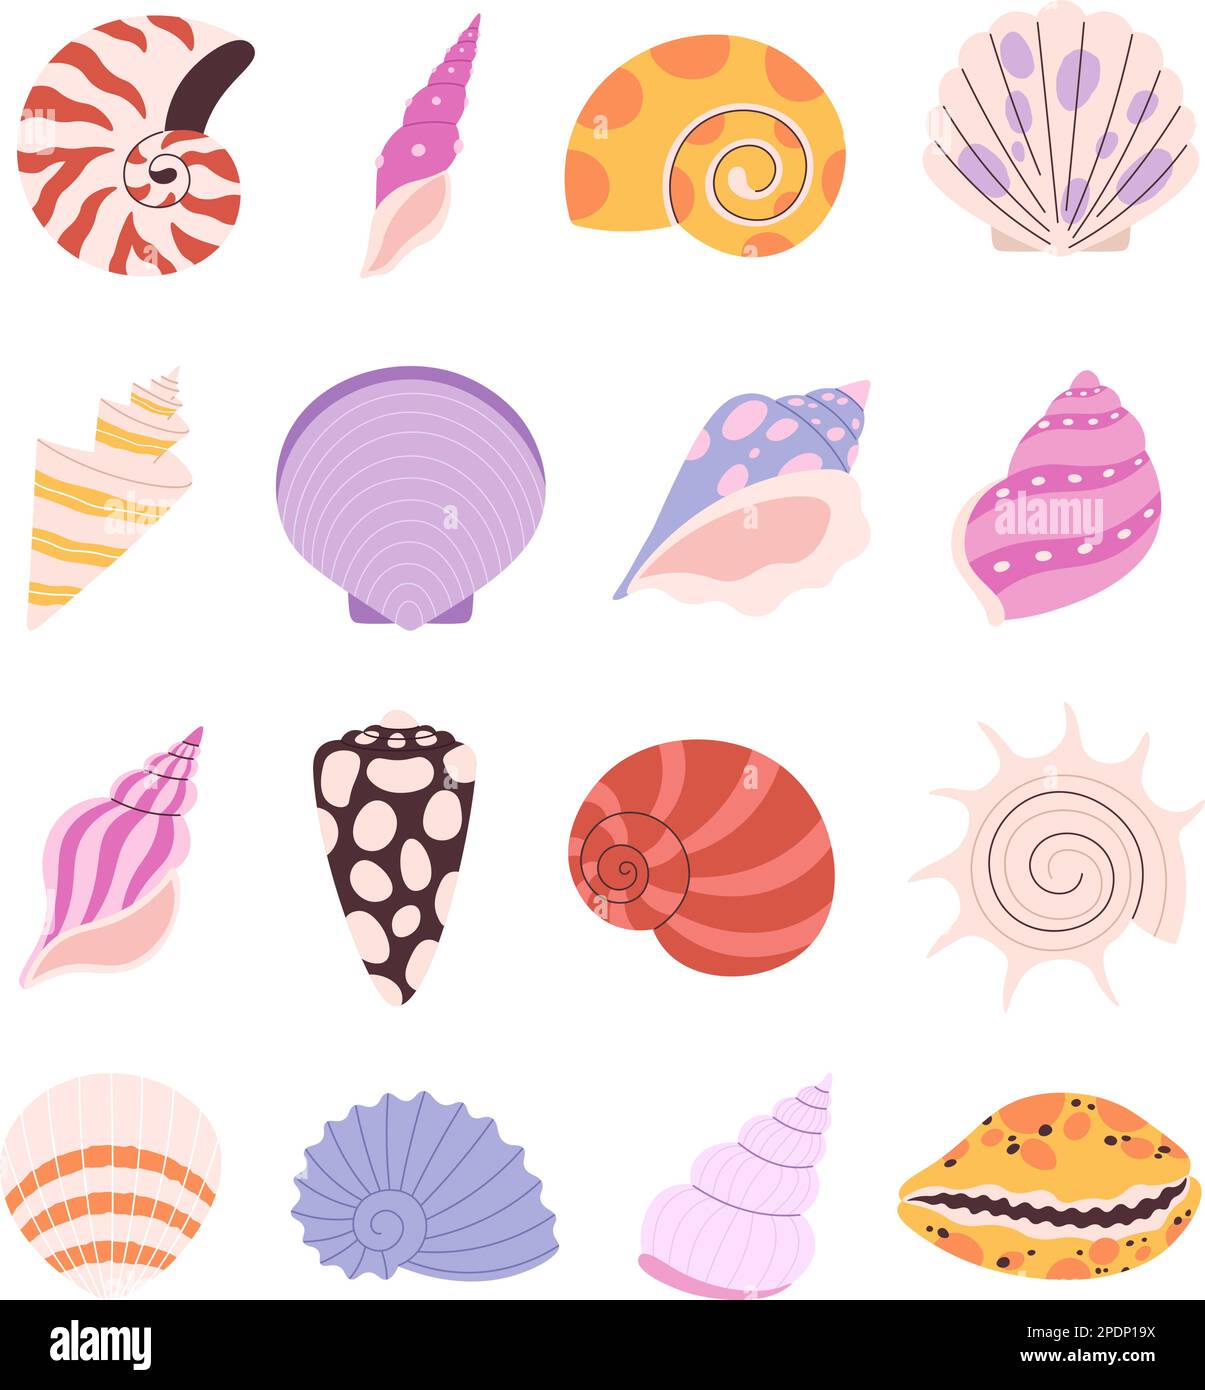 Muschel, Auster, Muscheln-Set. Cartoon-Muscheln und Seesterne, Ozean-Unterwasserkorallenelemente. Isolierte Meeresstrände Natur Vektorsymbole Stock Vektor